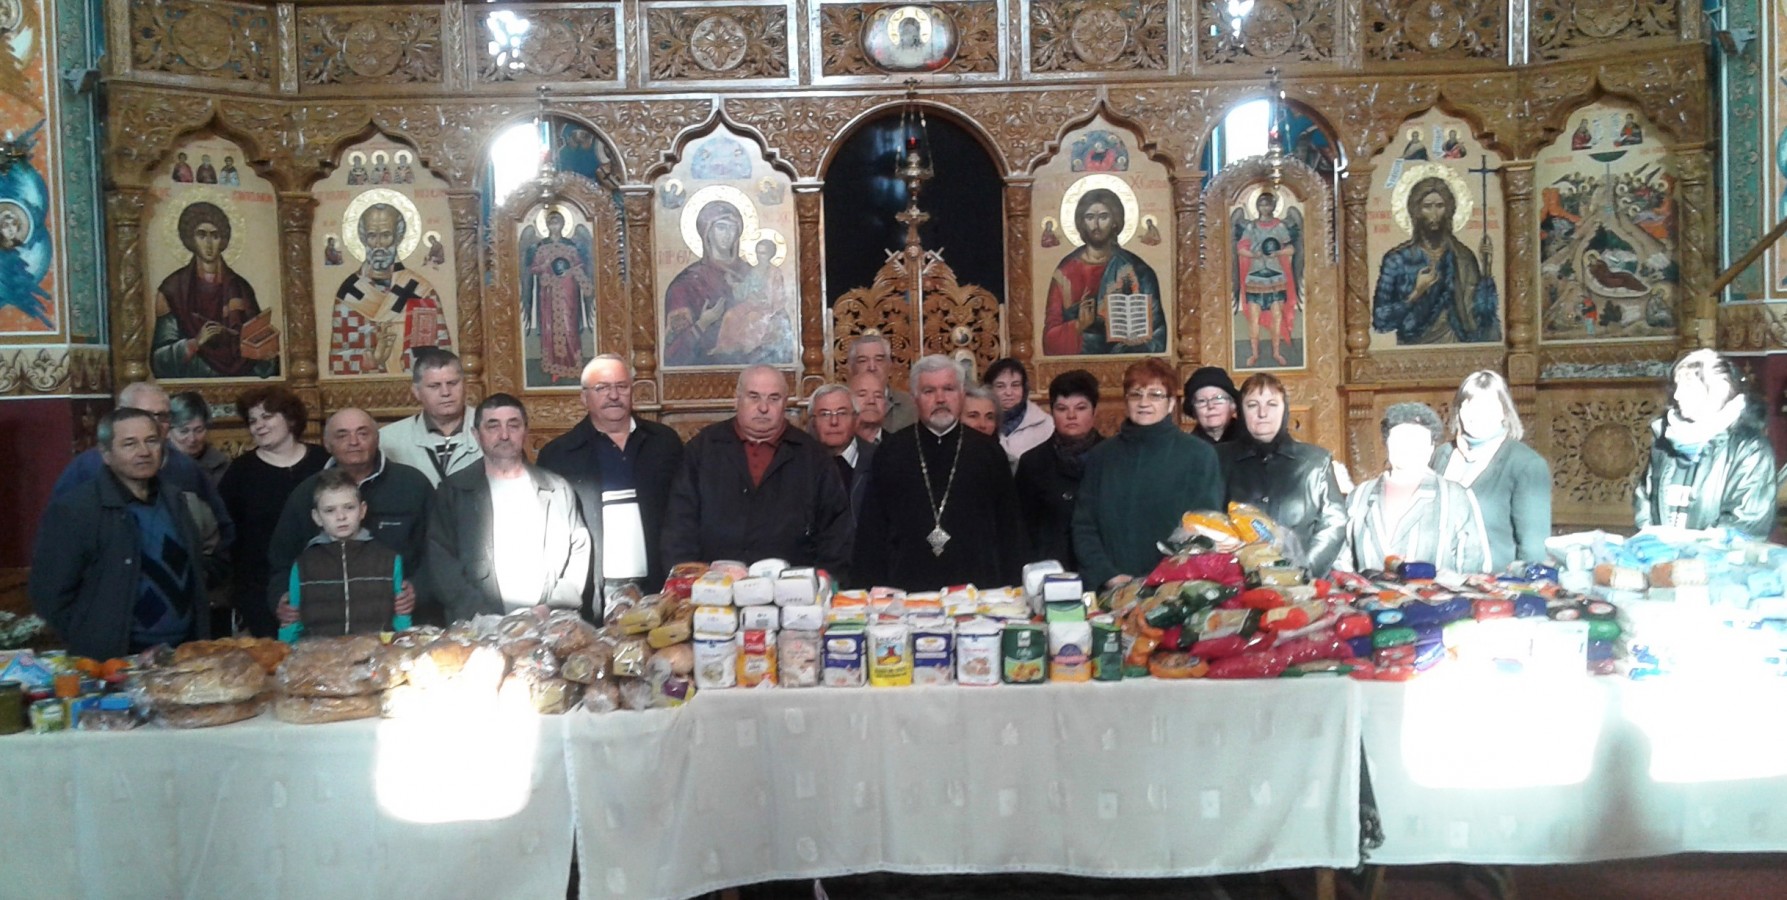 Pachete cu alimente de Paşti pentru familiile nevoiaşe din Baia Mare